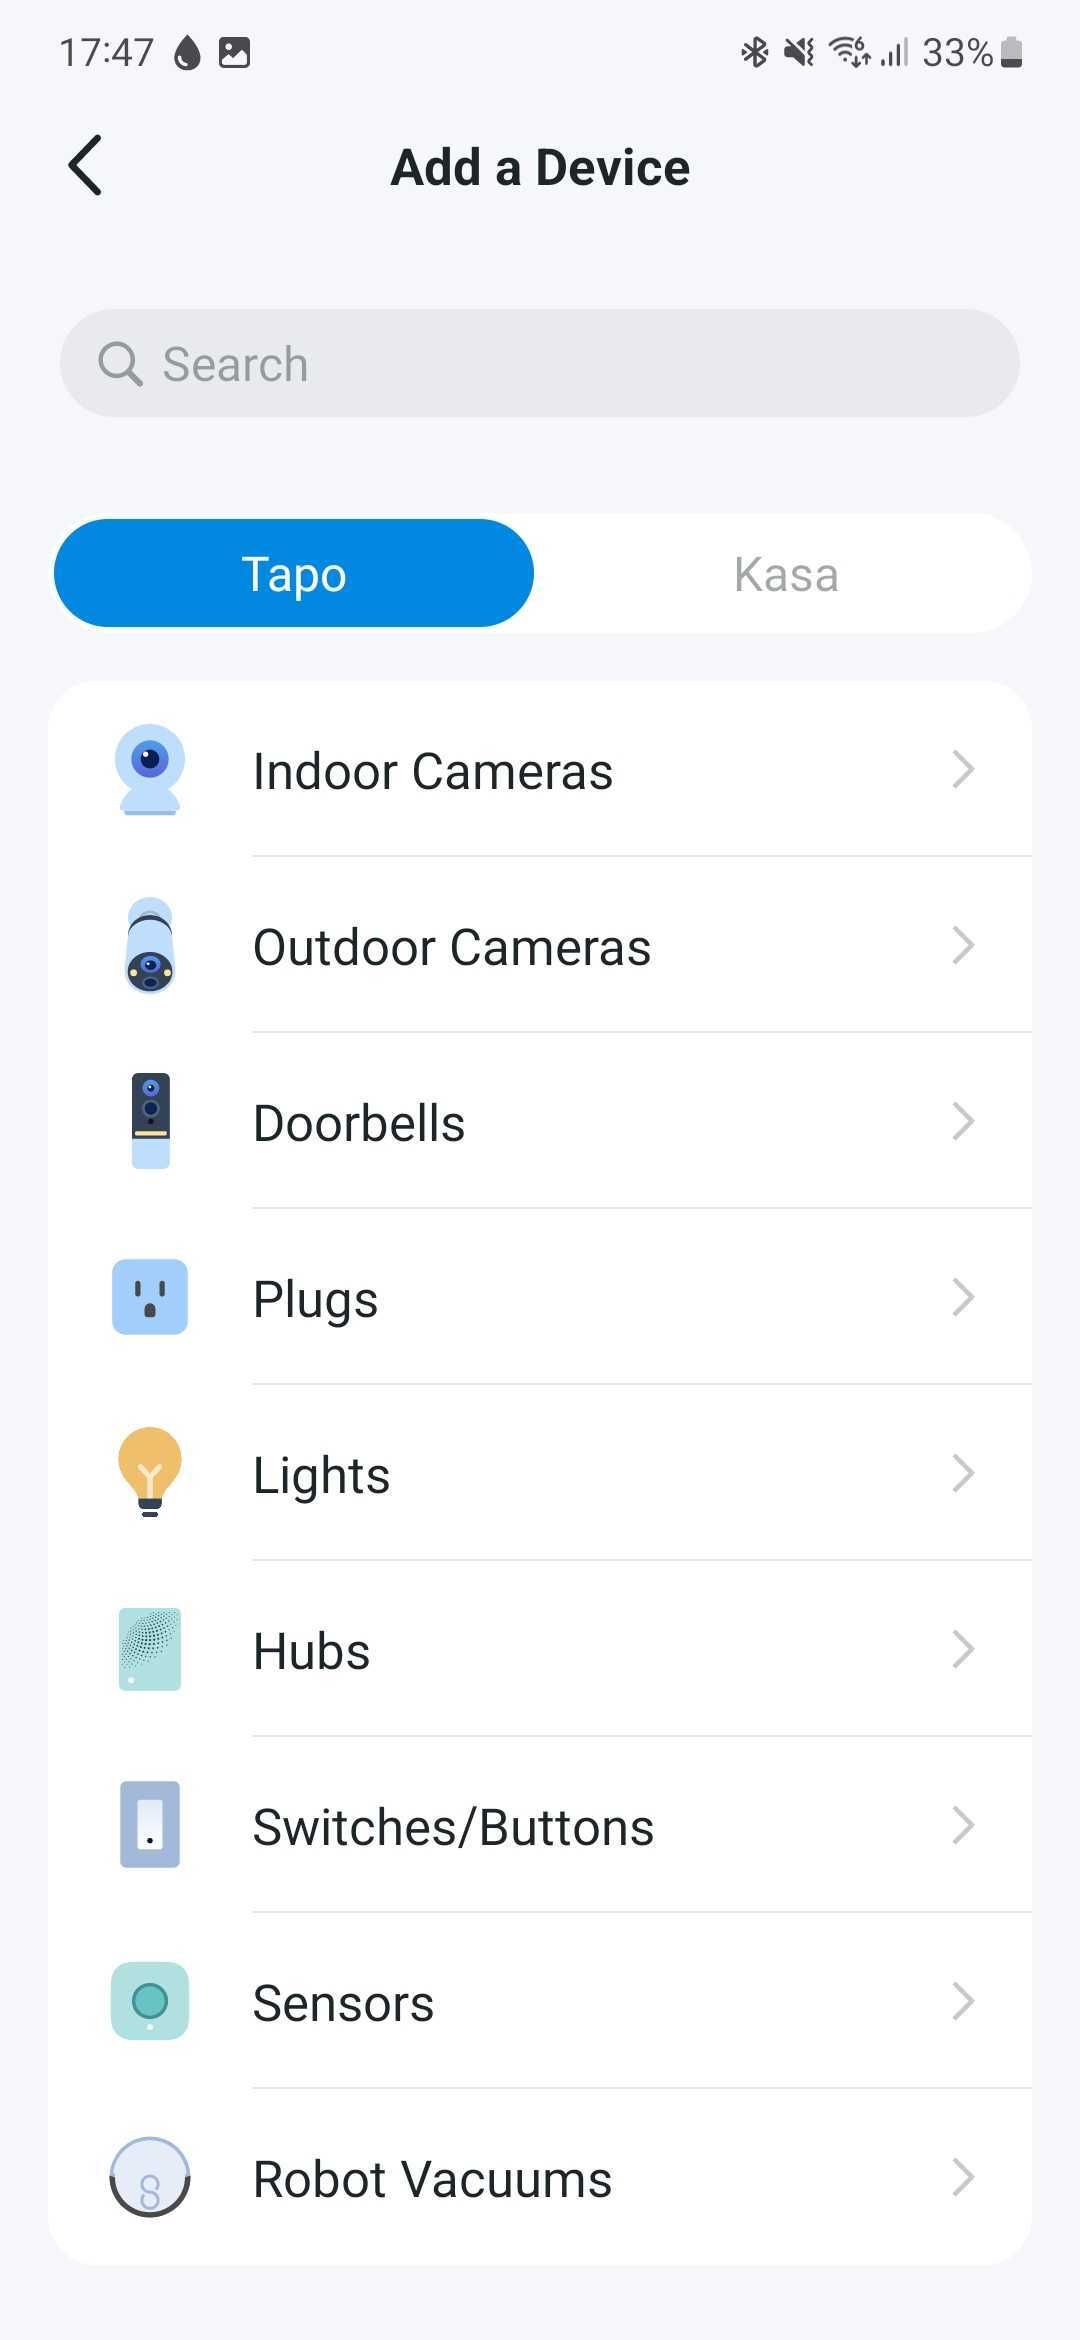 Captura de tela do aplicativo Tapo mostrando os vários tipos de dispositivos disponíveis para adicionar